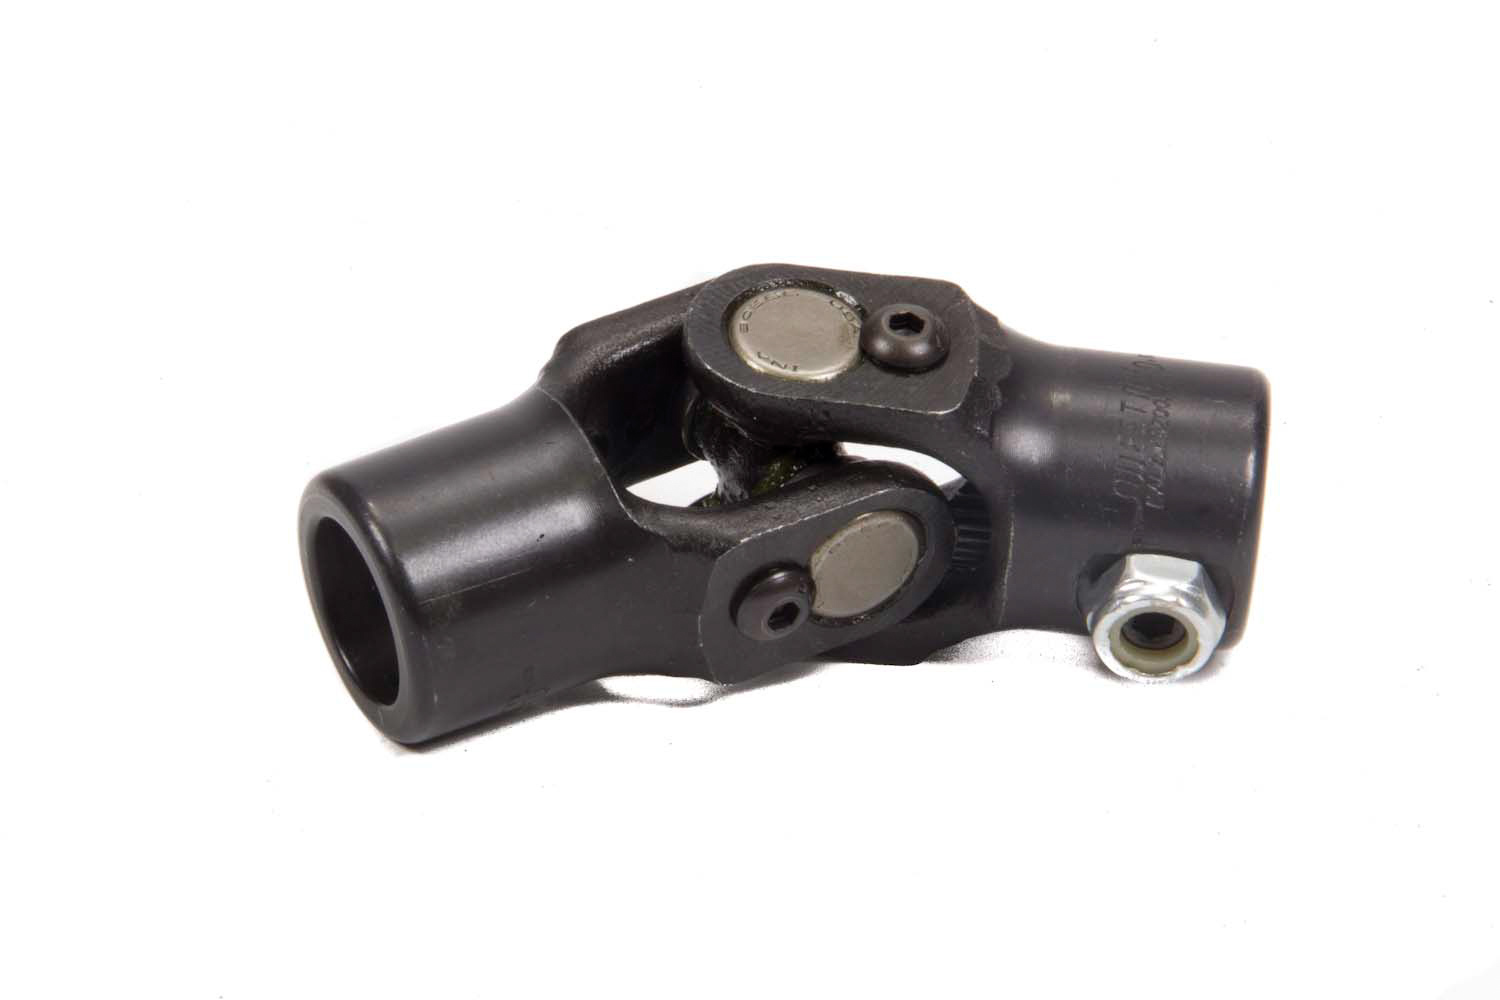 Steering Universal Joint - Single Joint - 3/4 in 20 Spline to 3/4 in 20 Spline - Steel - Black Paint - Each